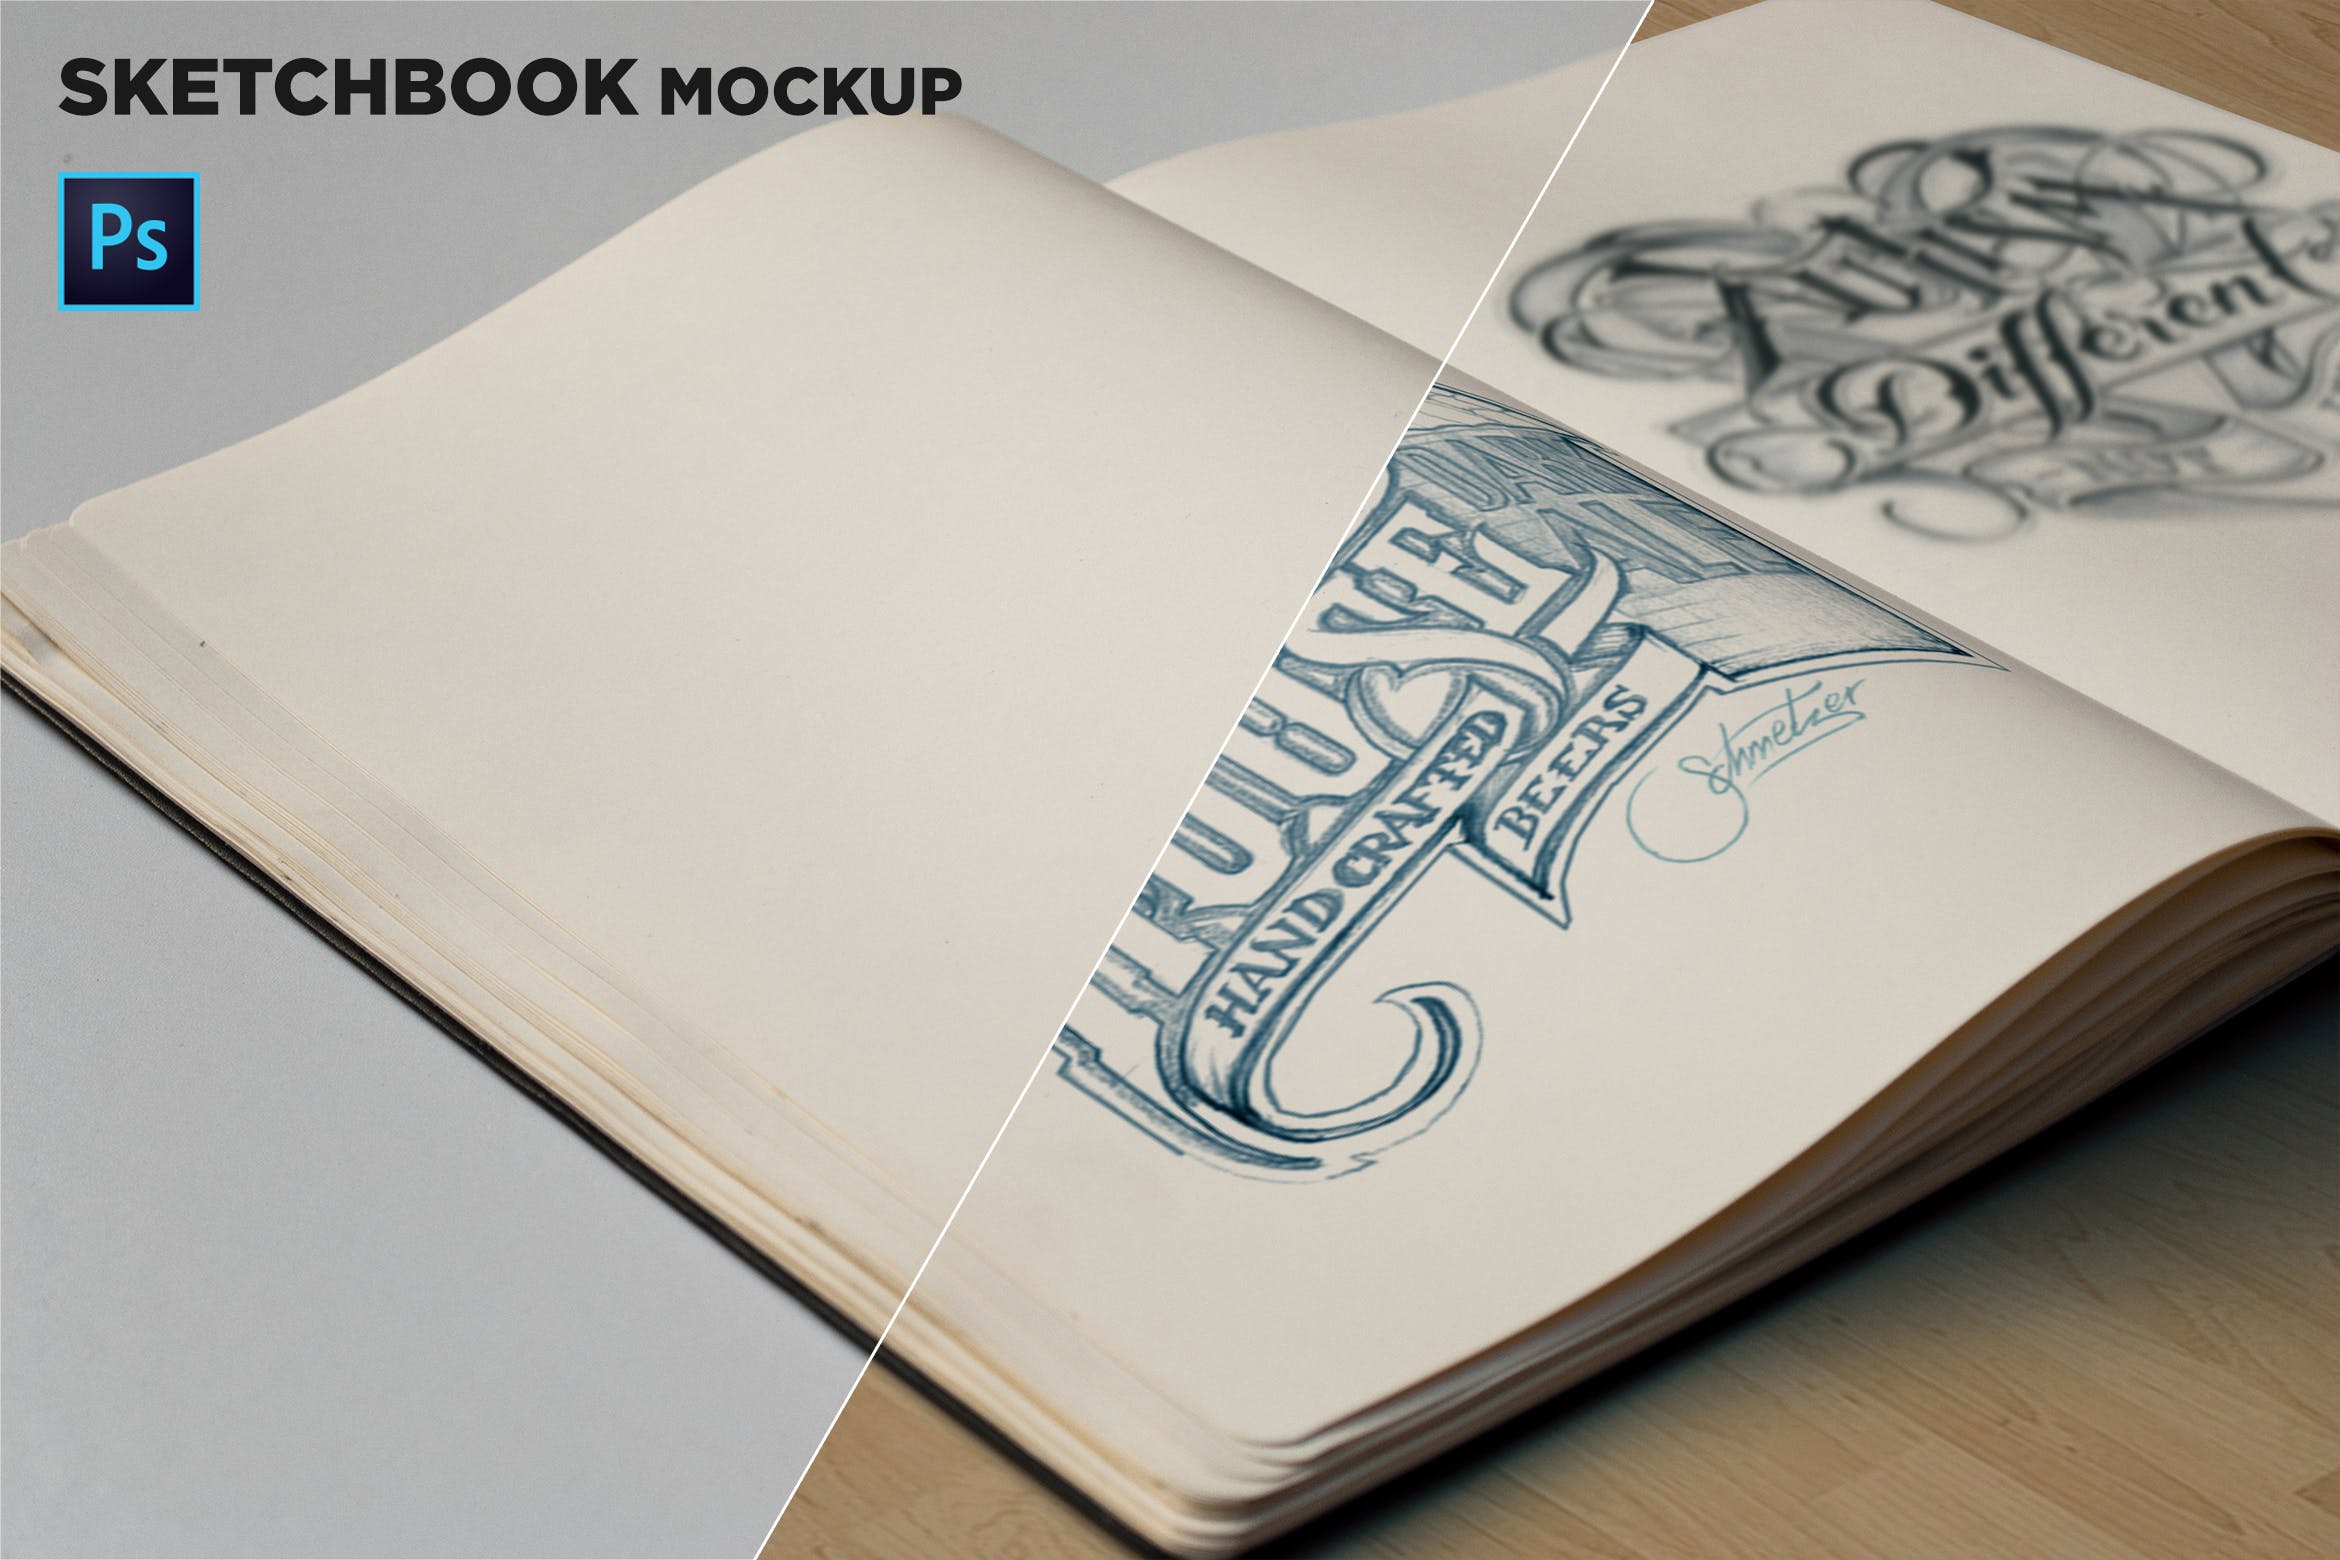 素描本内页设计/艺术作品展示特写镜头样机第一素材精选 Sketchbook Mockup Closeup插图